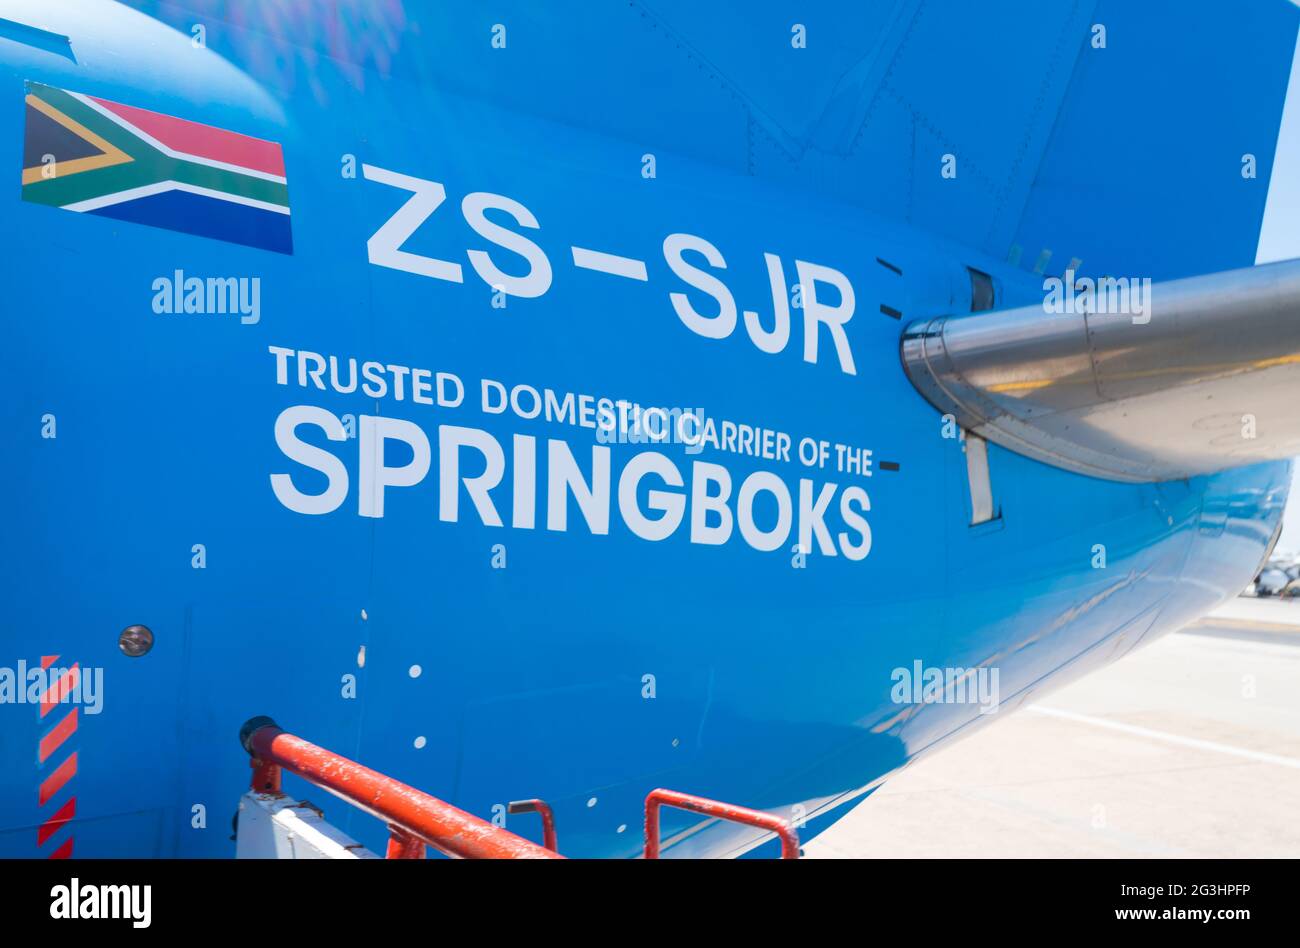 Avion avec texte ou mots soutenant l'équipe de rugby Springbok pendant la coupe du monde 2019 concept international équipe sportive Banque D'Images